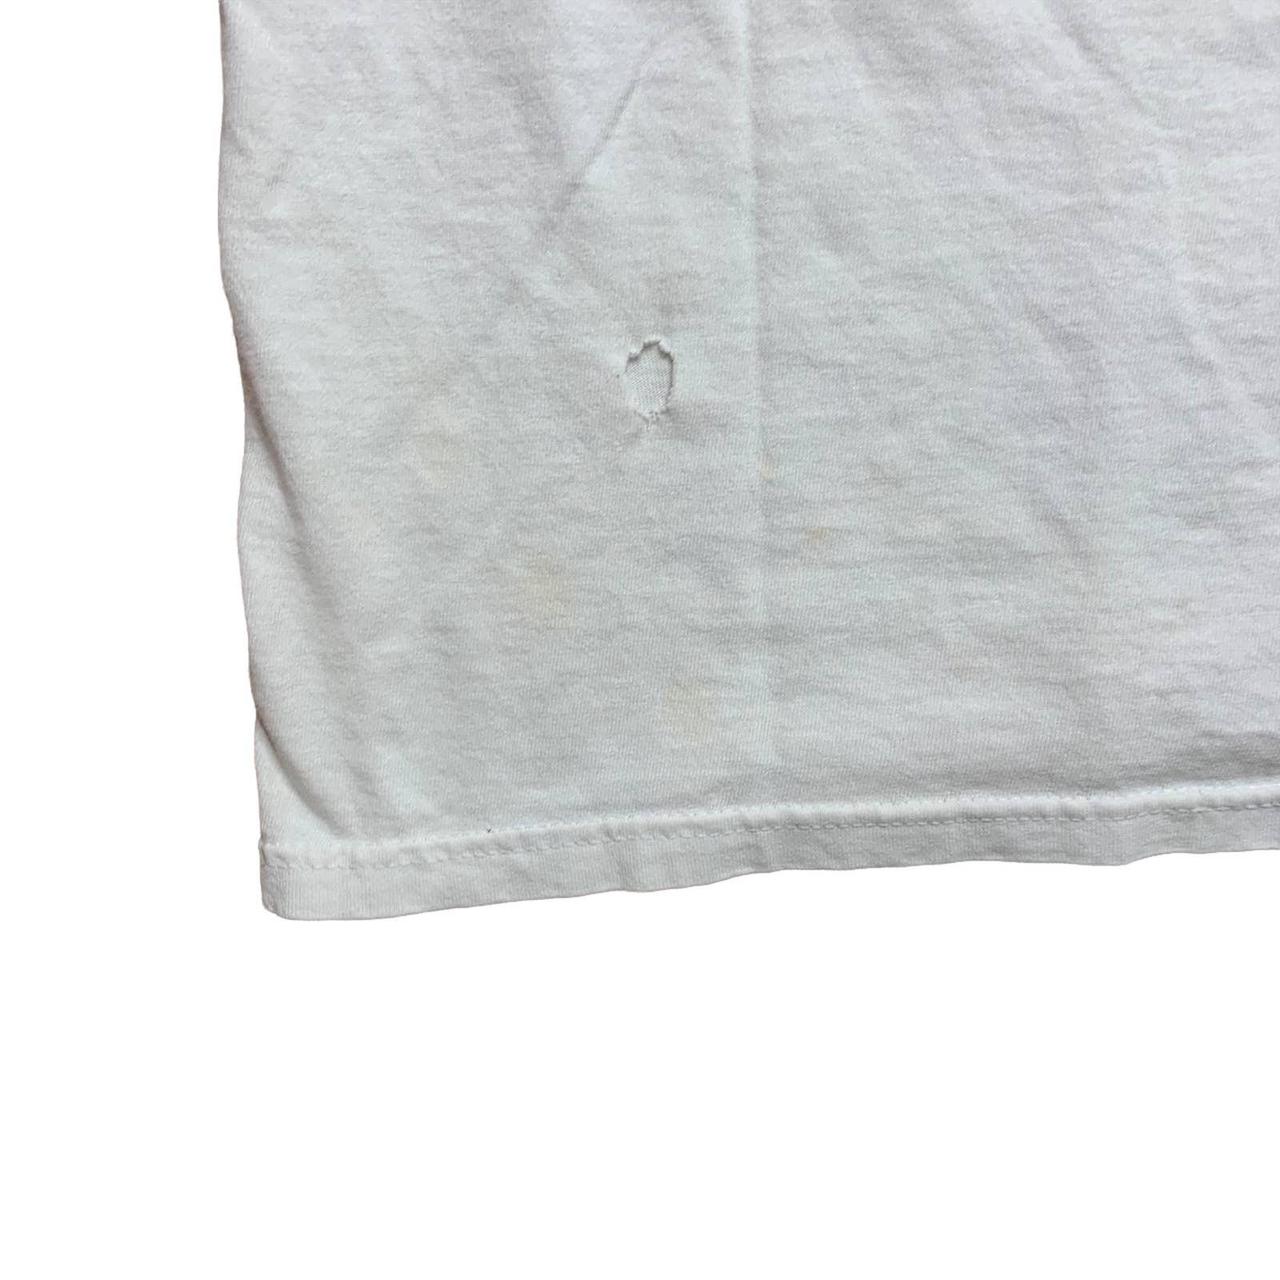 Chase Authentics Men's White T-shirt (4)